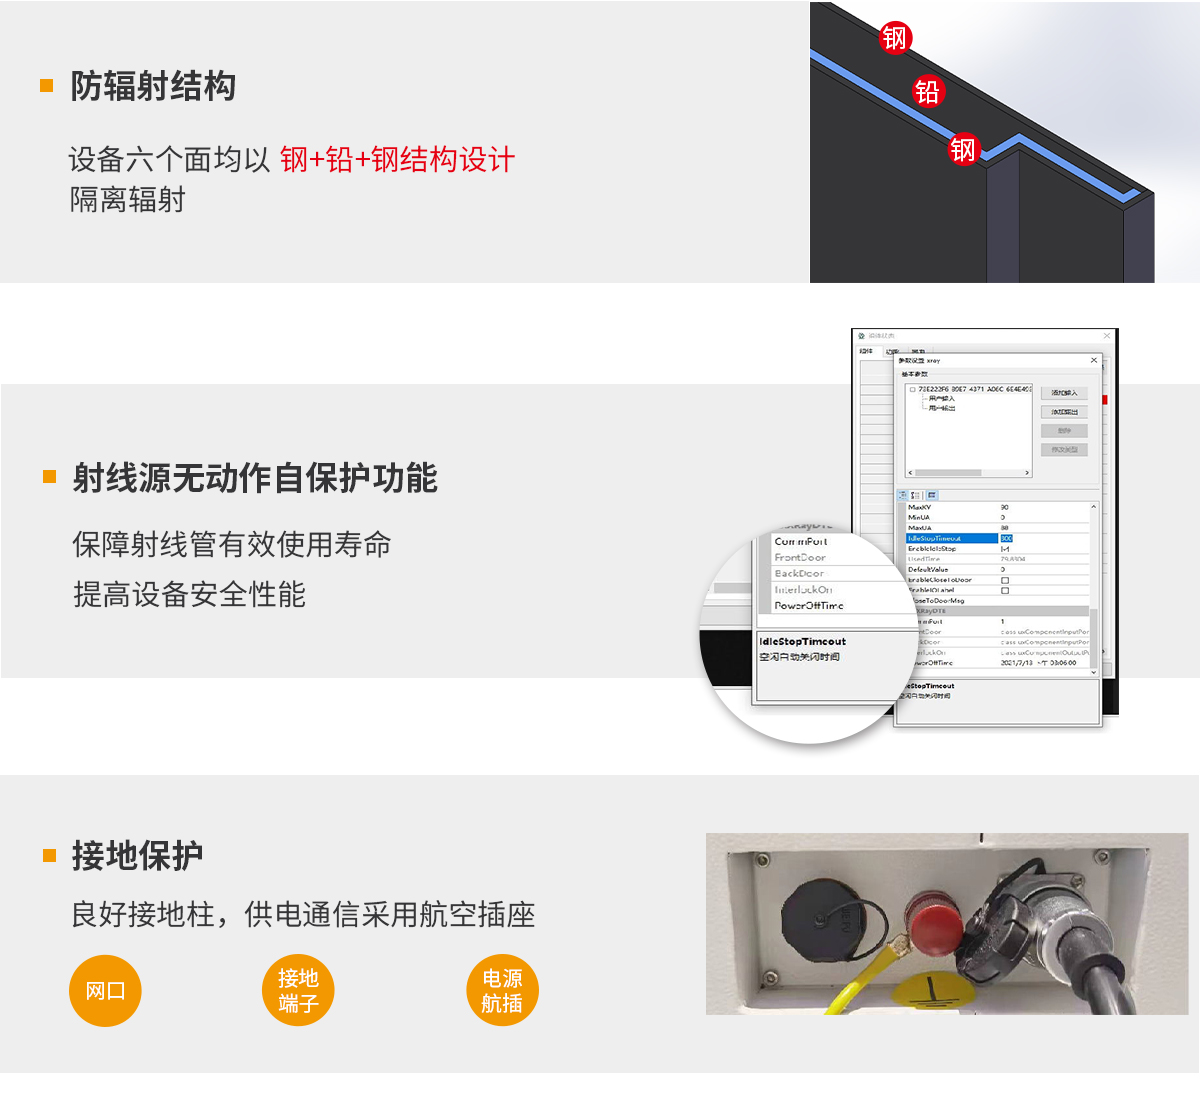 crown官网(中国)有限公司X-ray检测设备安全保障